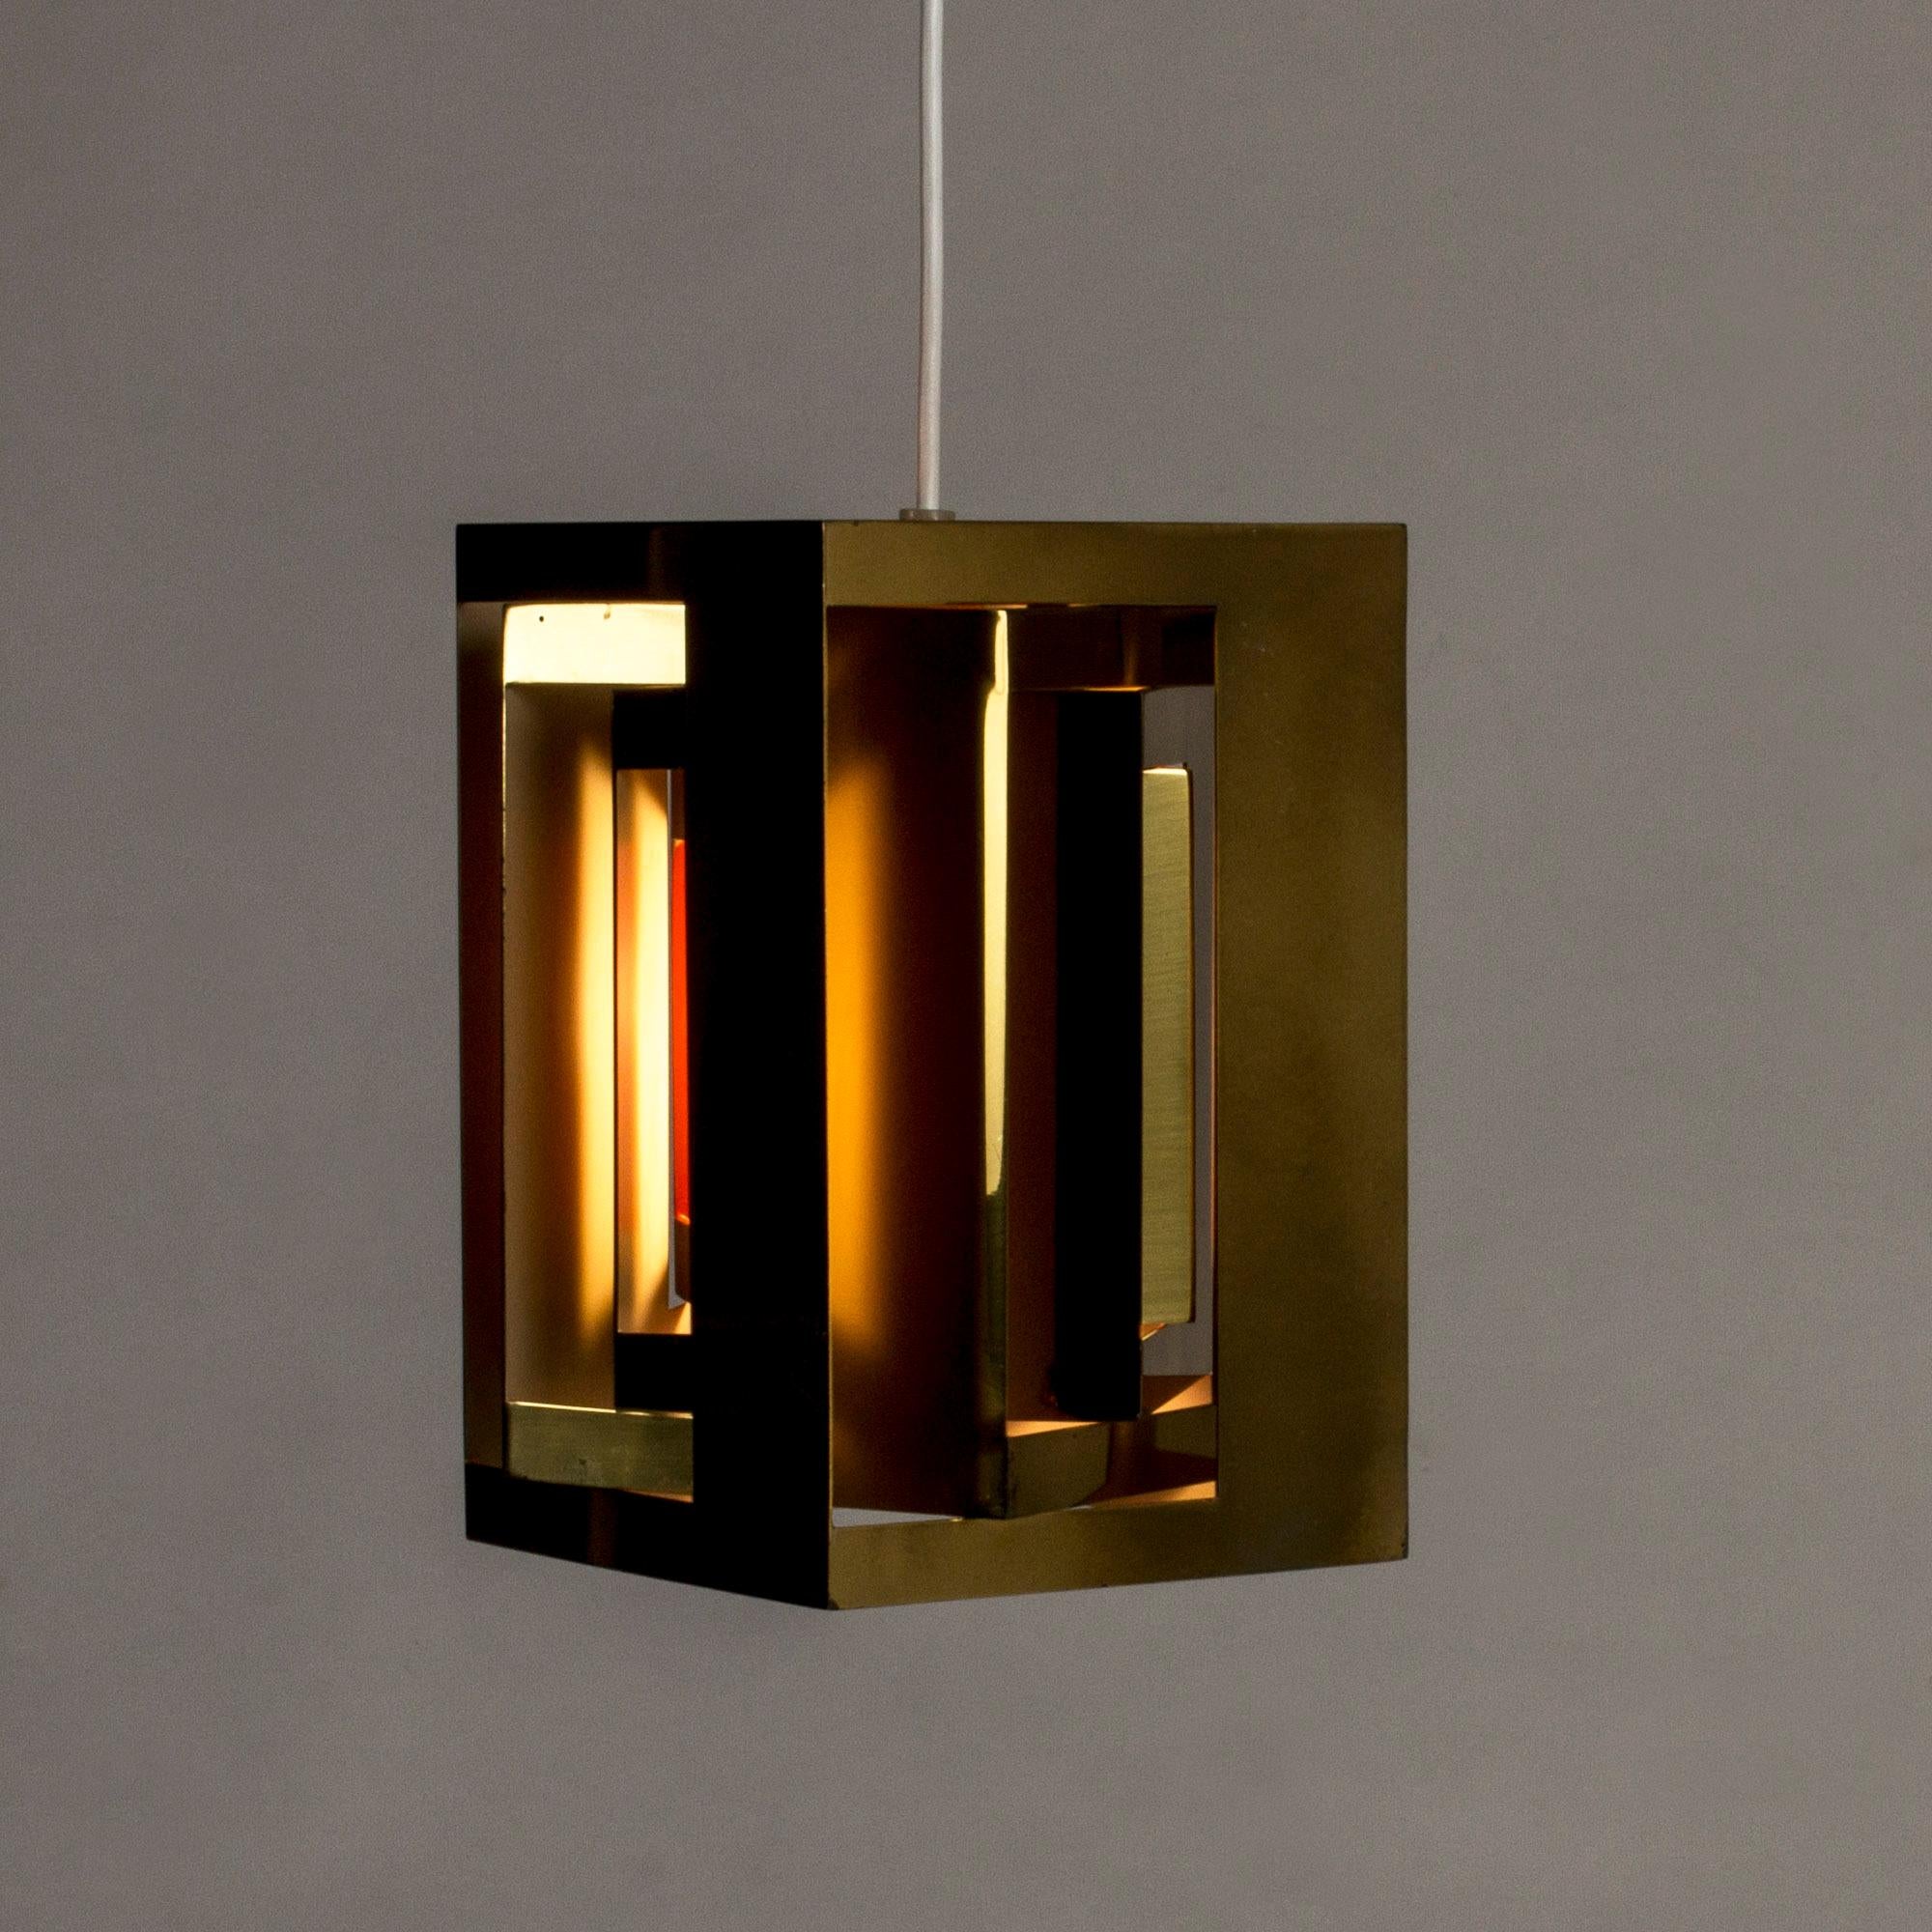 Scandinavian Modern “Kassablanka” Pendant Lamp by Simon Henningsen